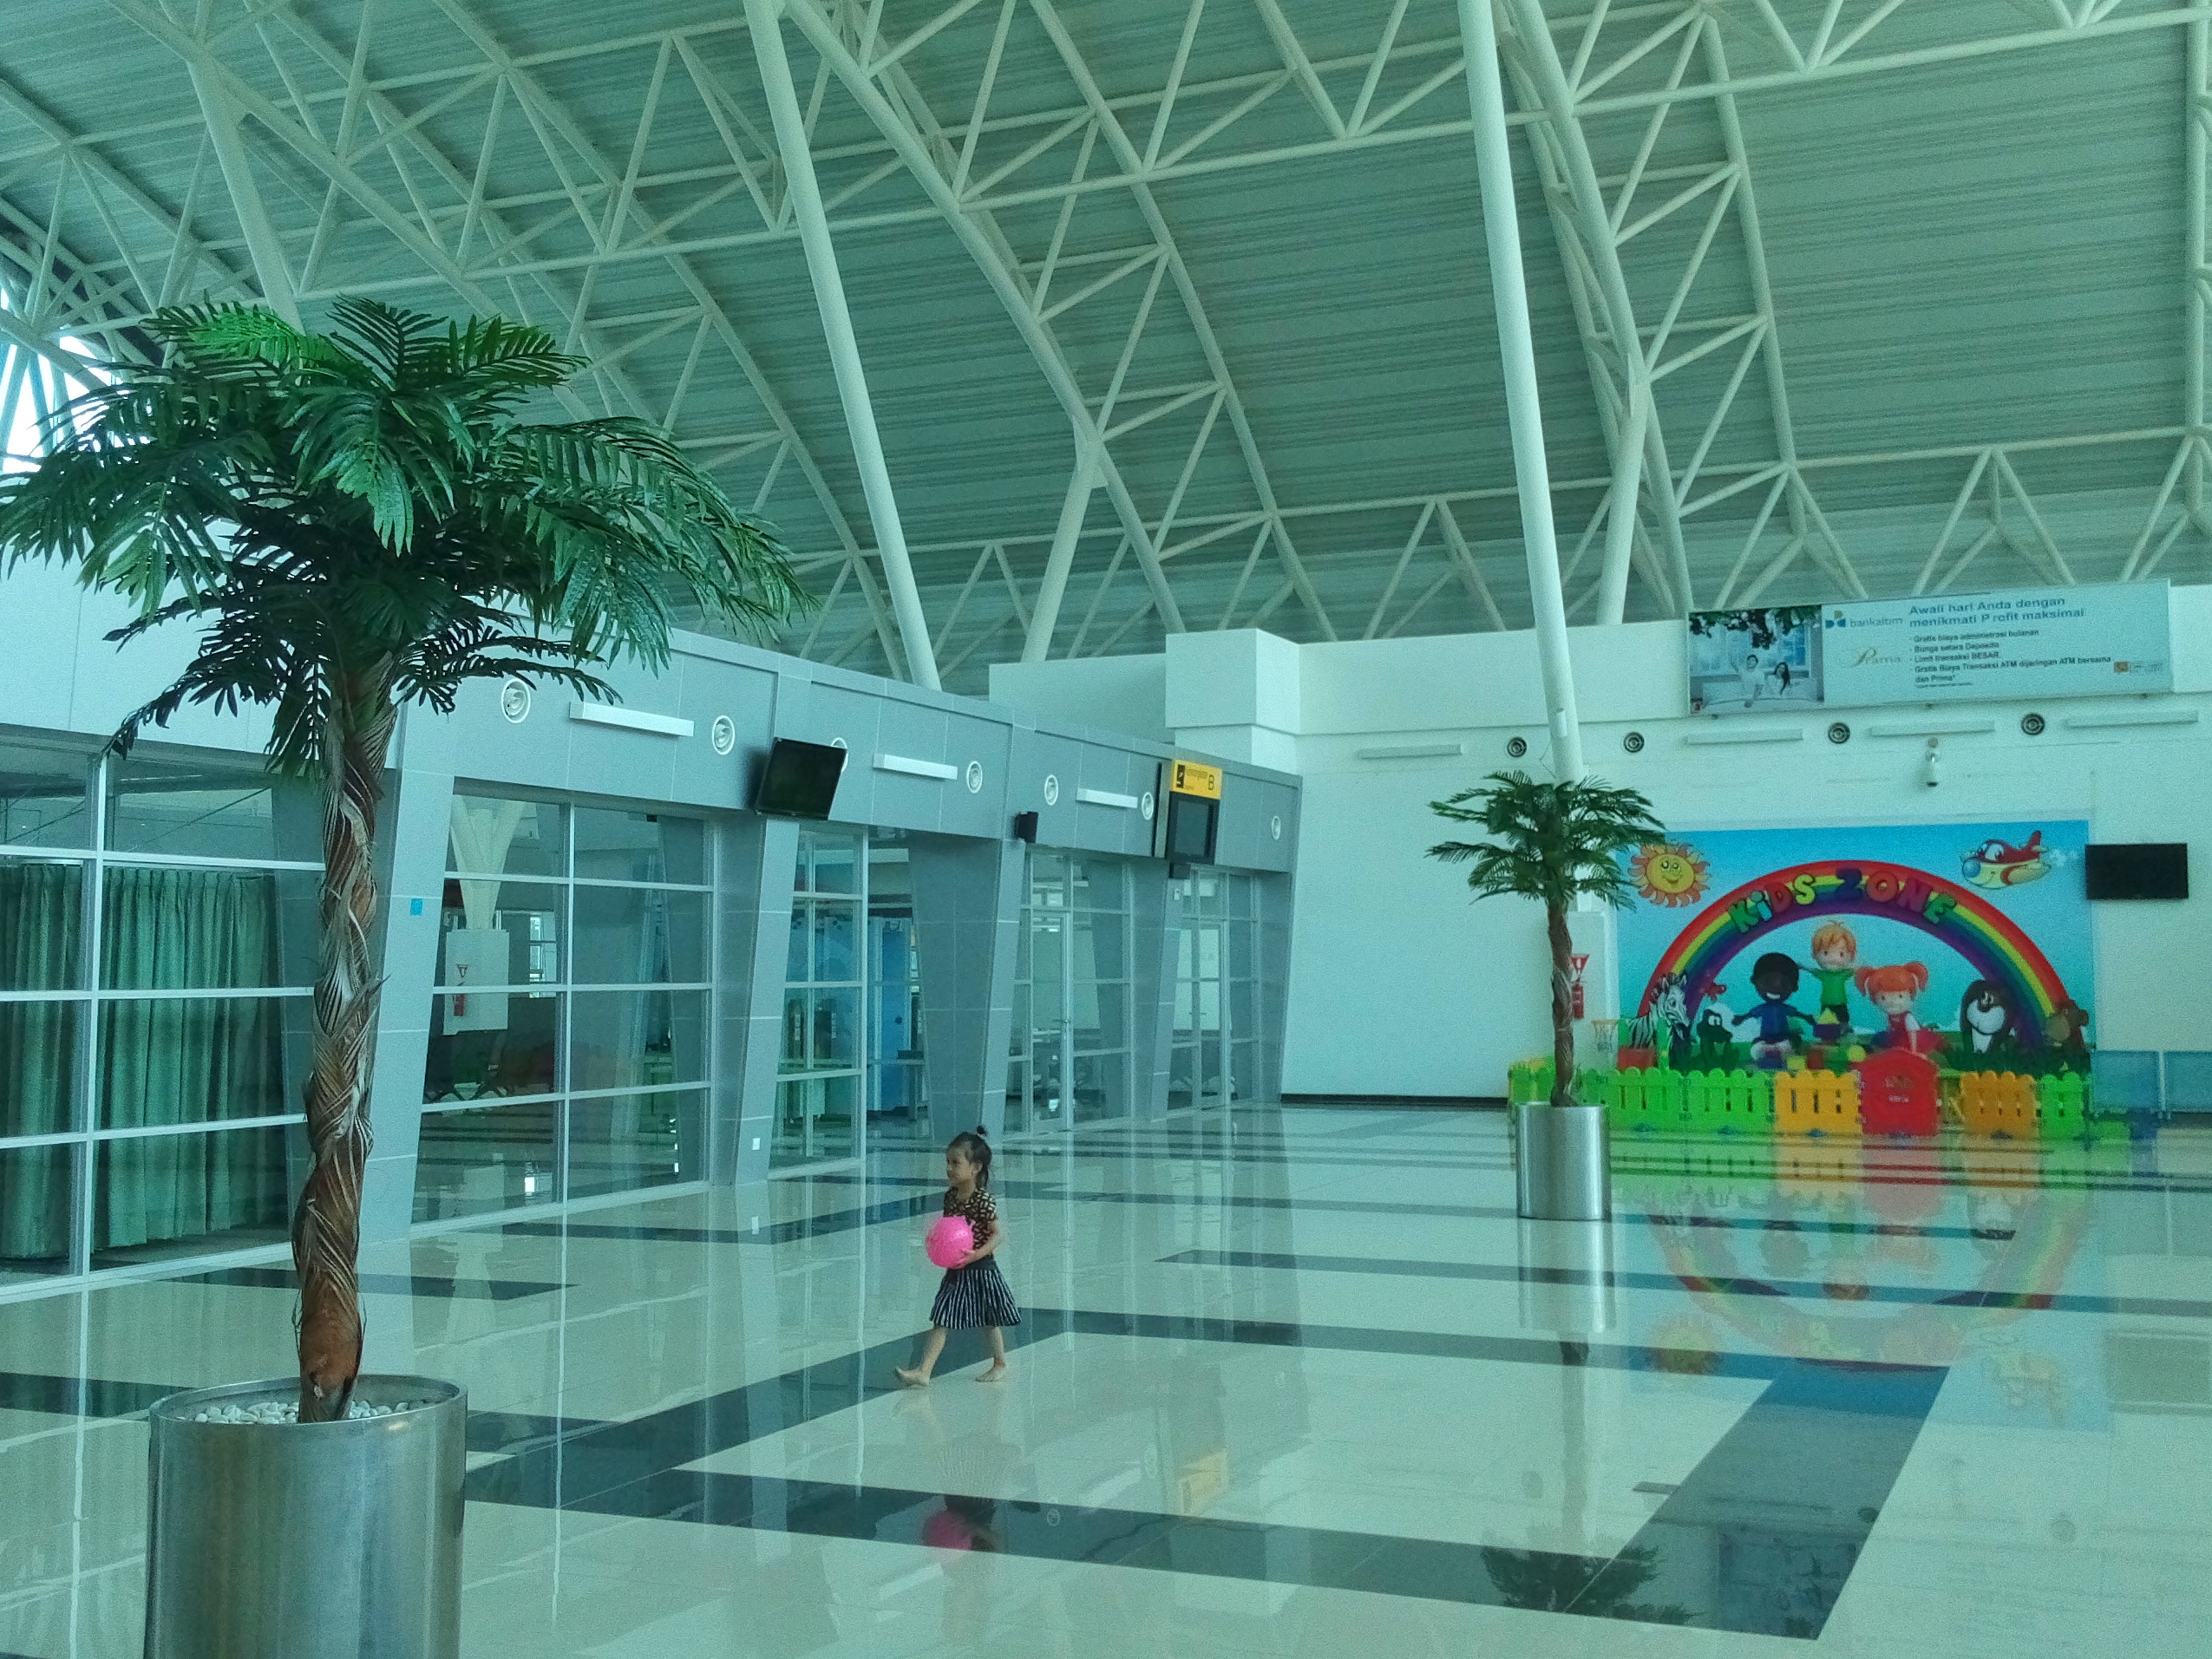 Di bandara kecil ini pengelola bandara menyiapkan berbagai fasilitas pendukung bagi penumpang, salah satunya sarana bermain anak. 